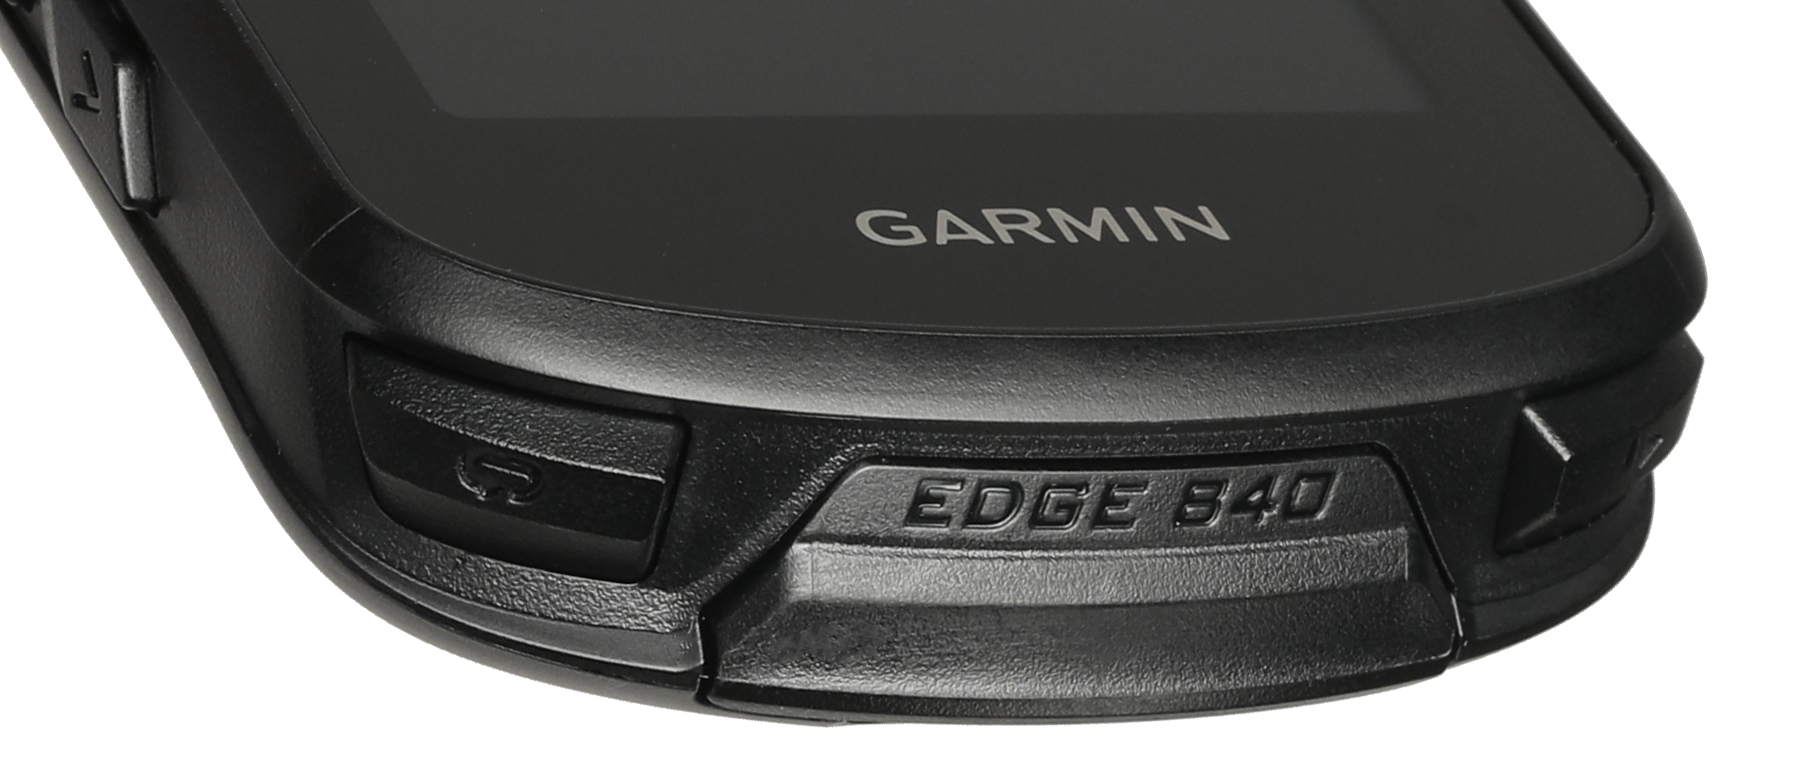 Garmin Edge 840 GPS Computer